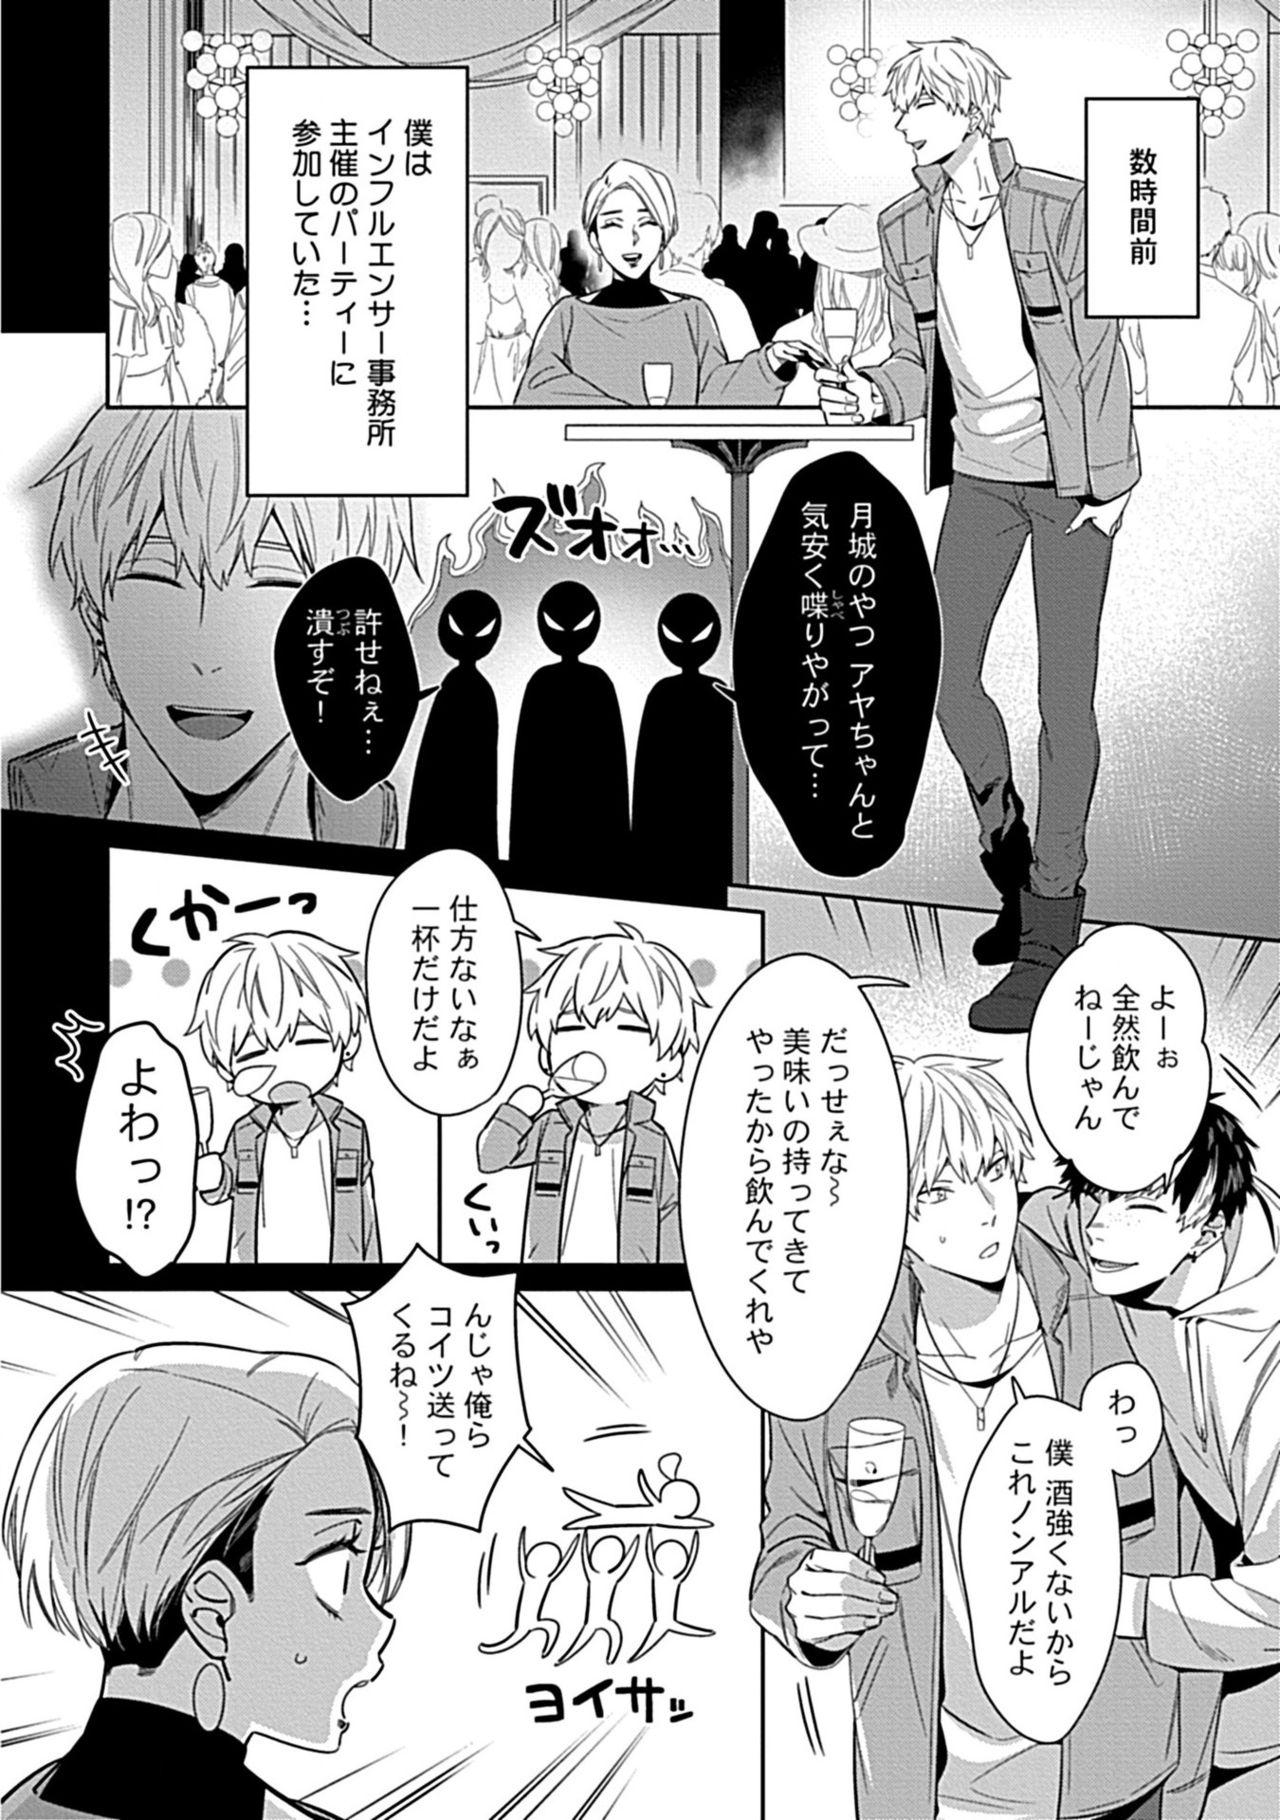 Spy Kami-sama wa ×× ga osuki Gay Straight - Page 4